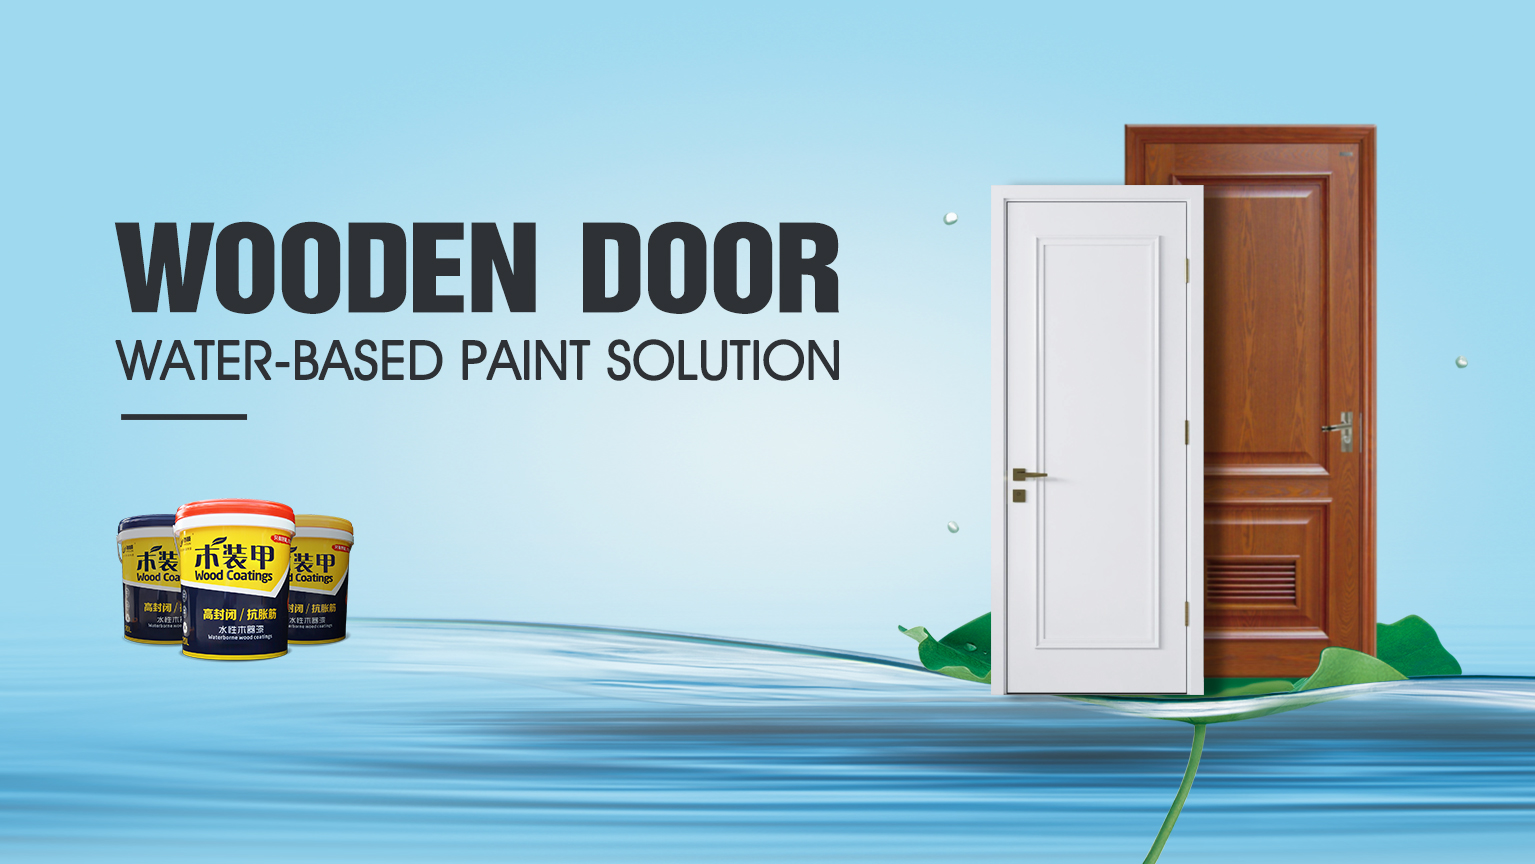 Wooden door water-based painting solution